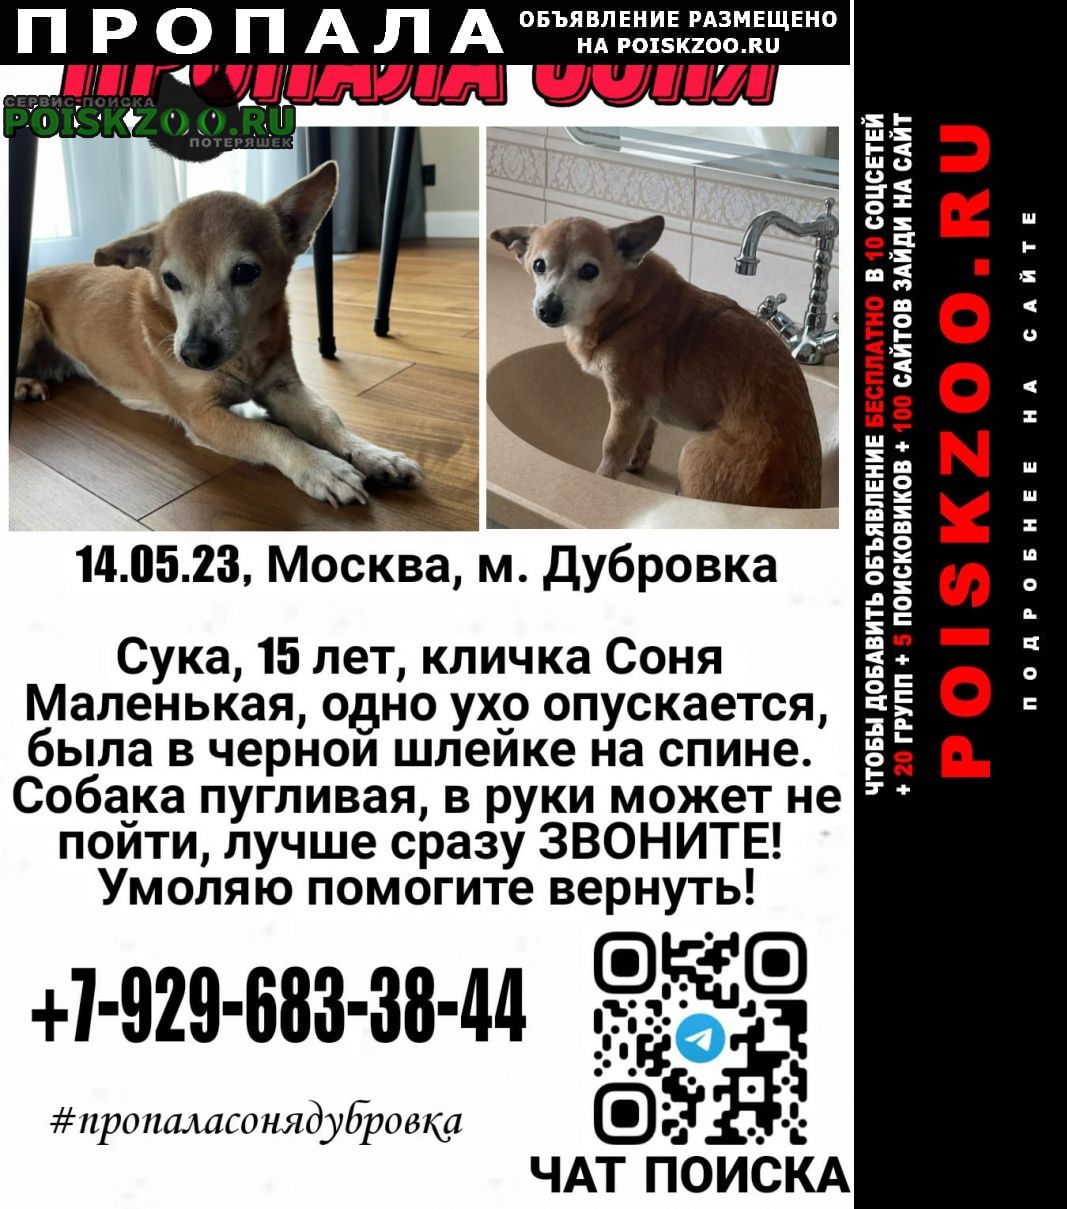 Пропала собака помогите пожалуйста найти Москва